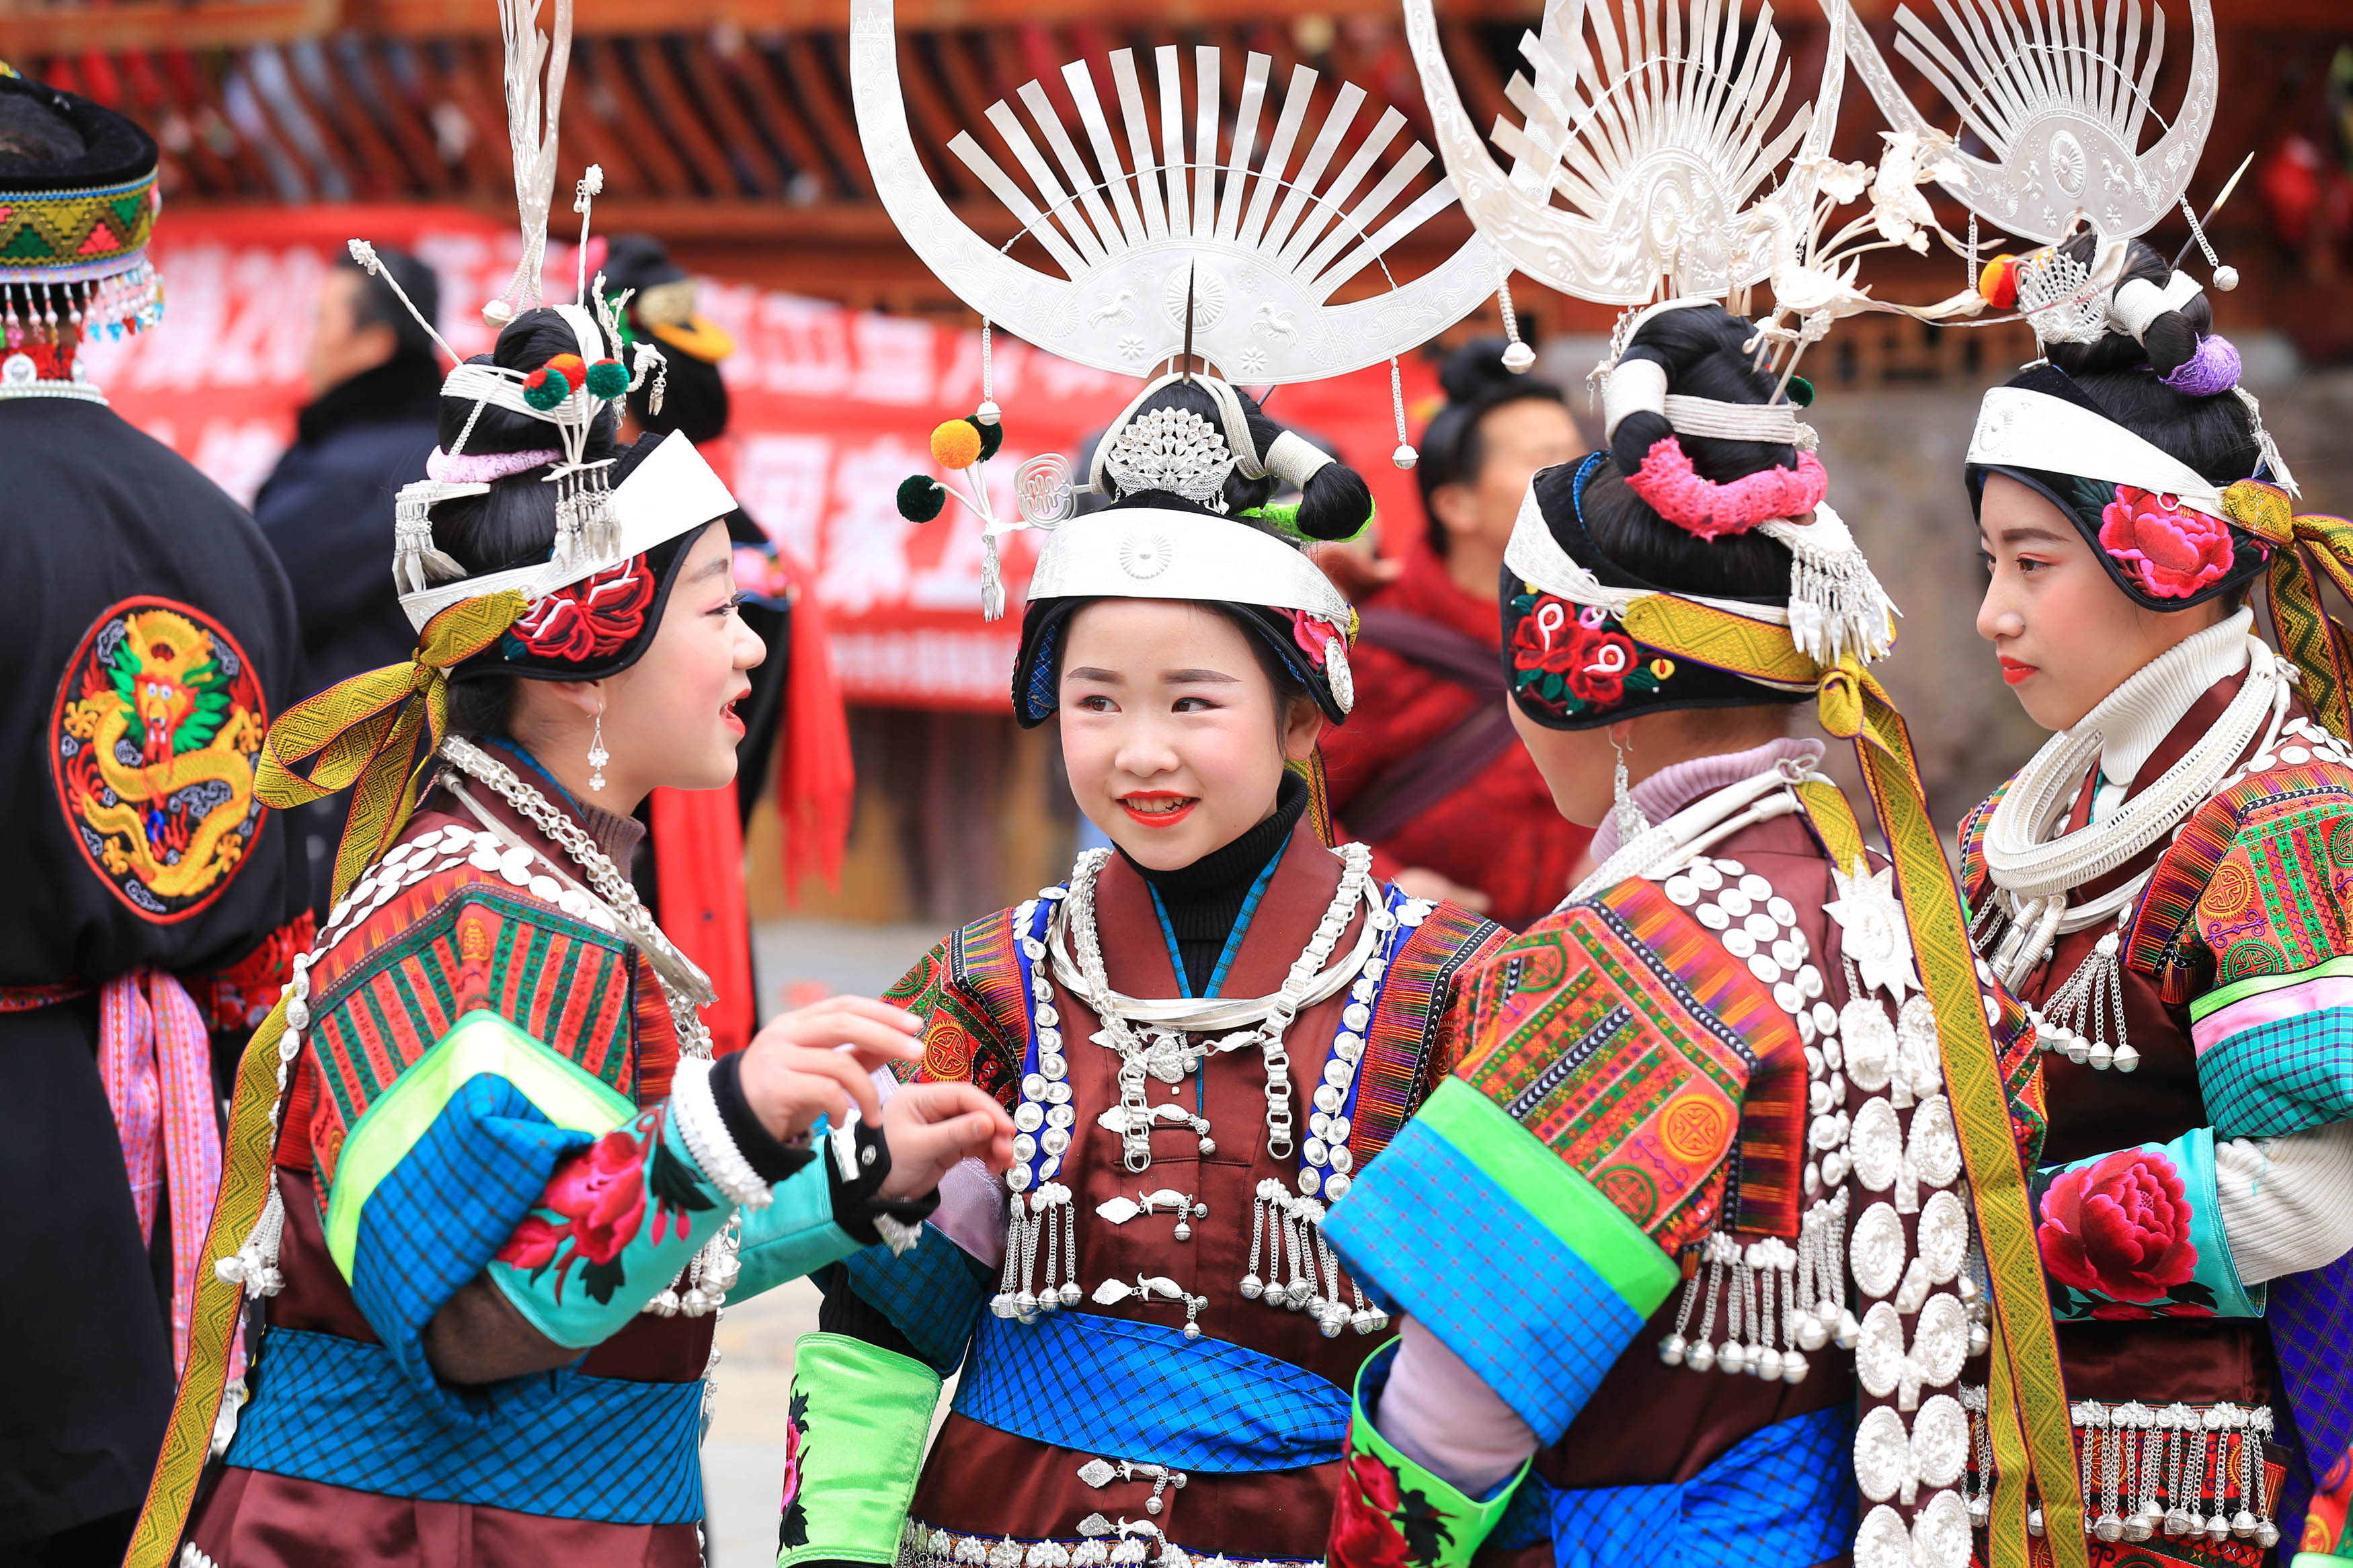 2月24日,在贵州省凯里市舟溪镇,苗族姑娘身着盛装跳芦笙舞